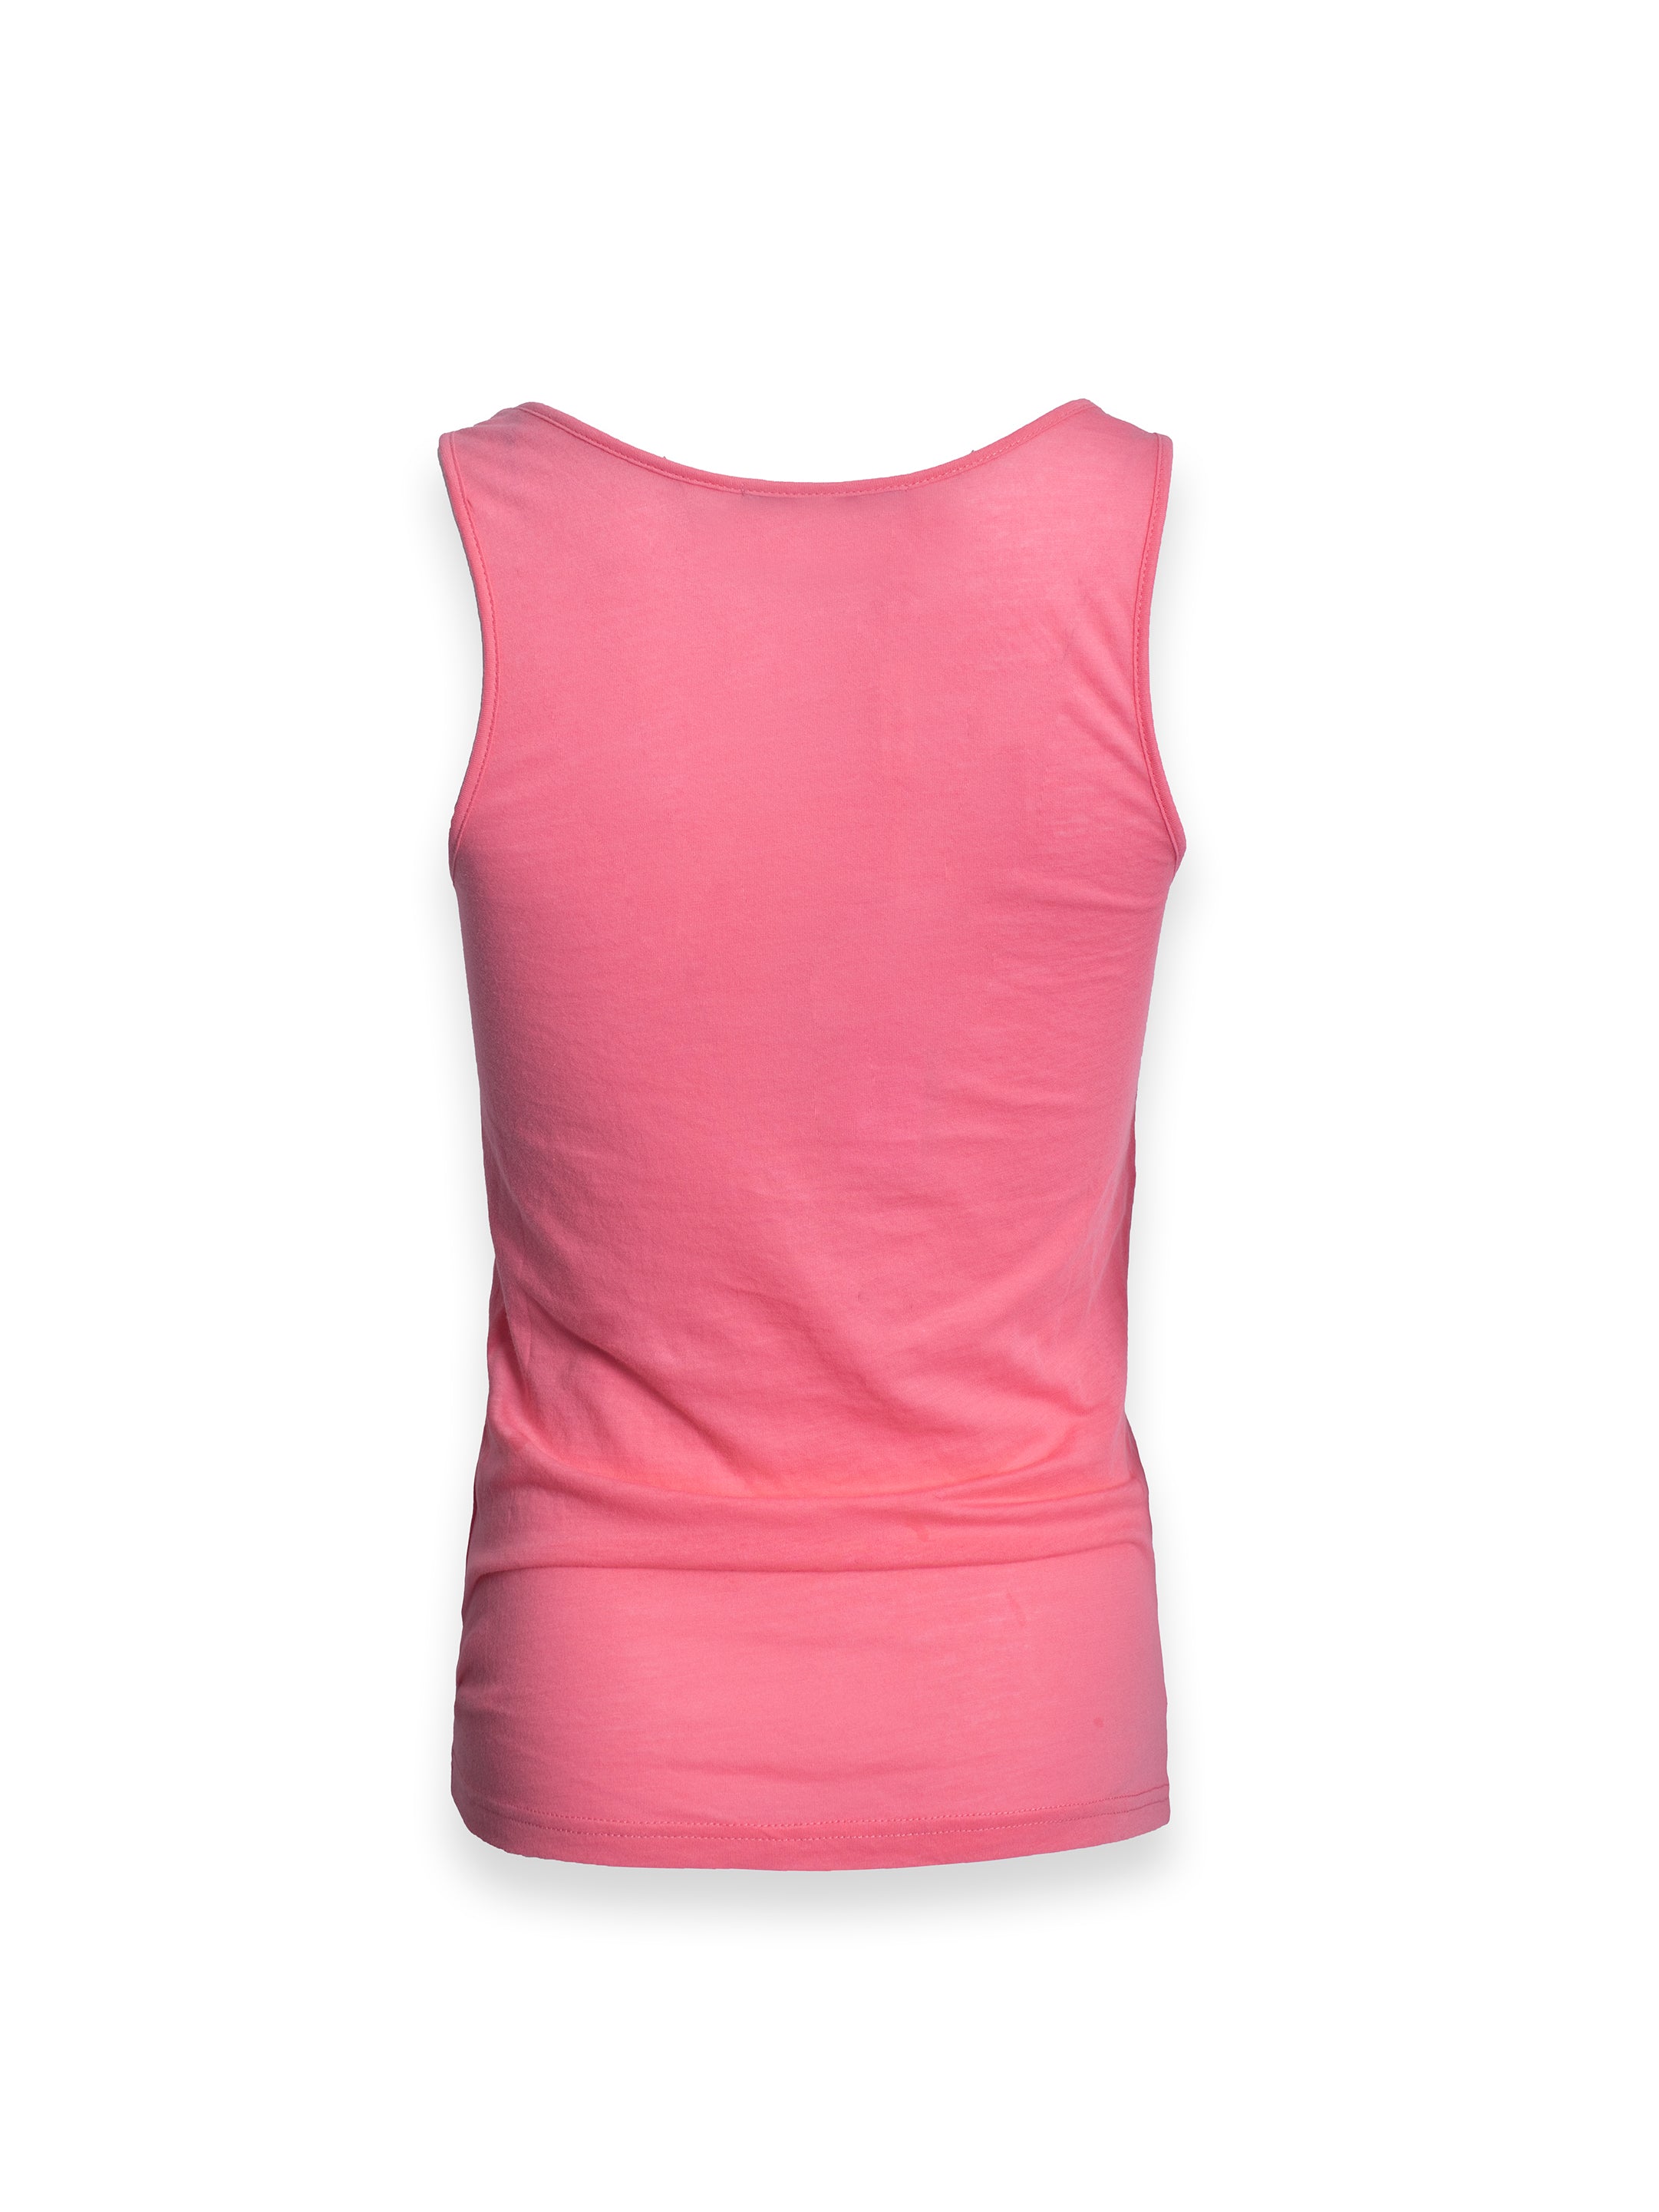 Pink Active Wear Vest Top